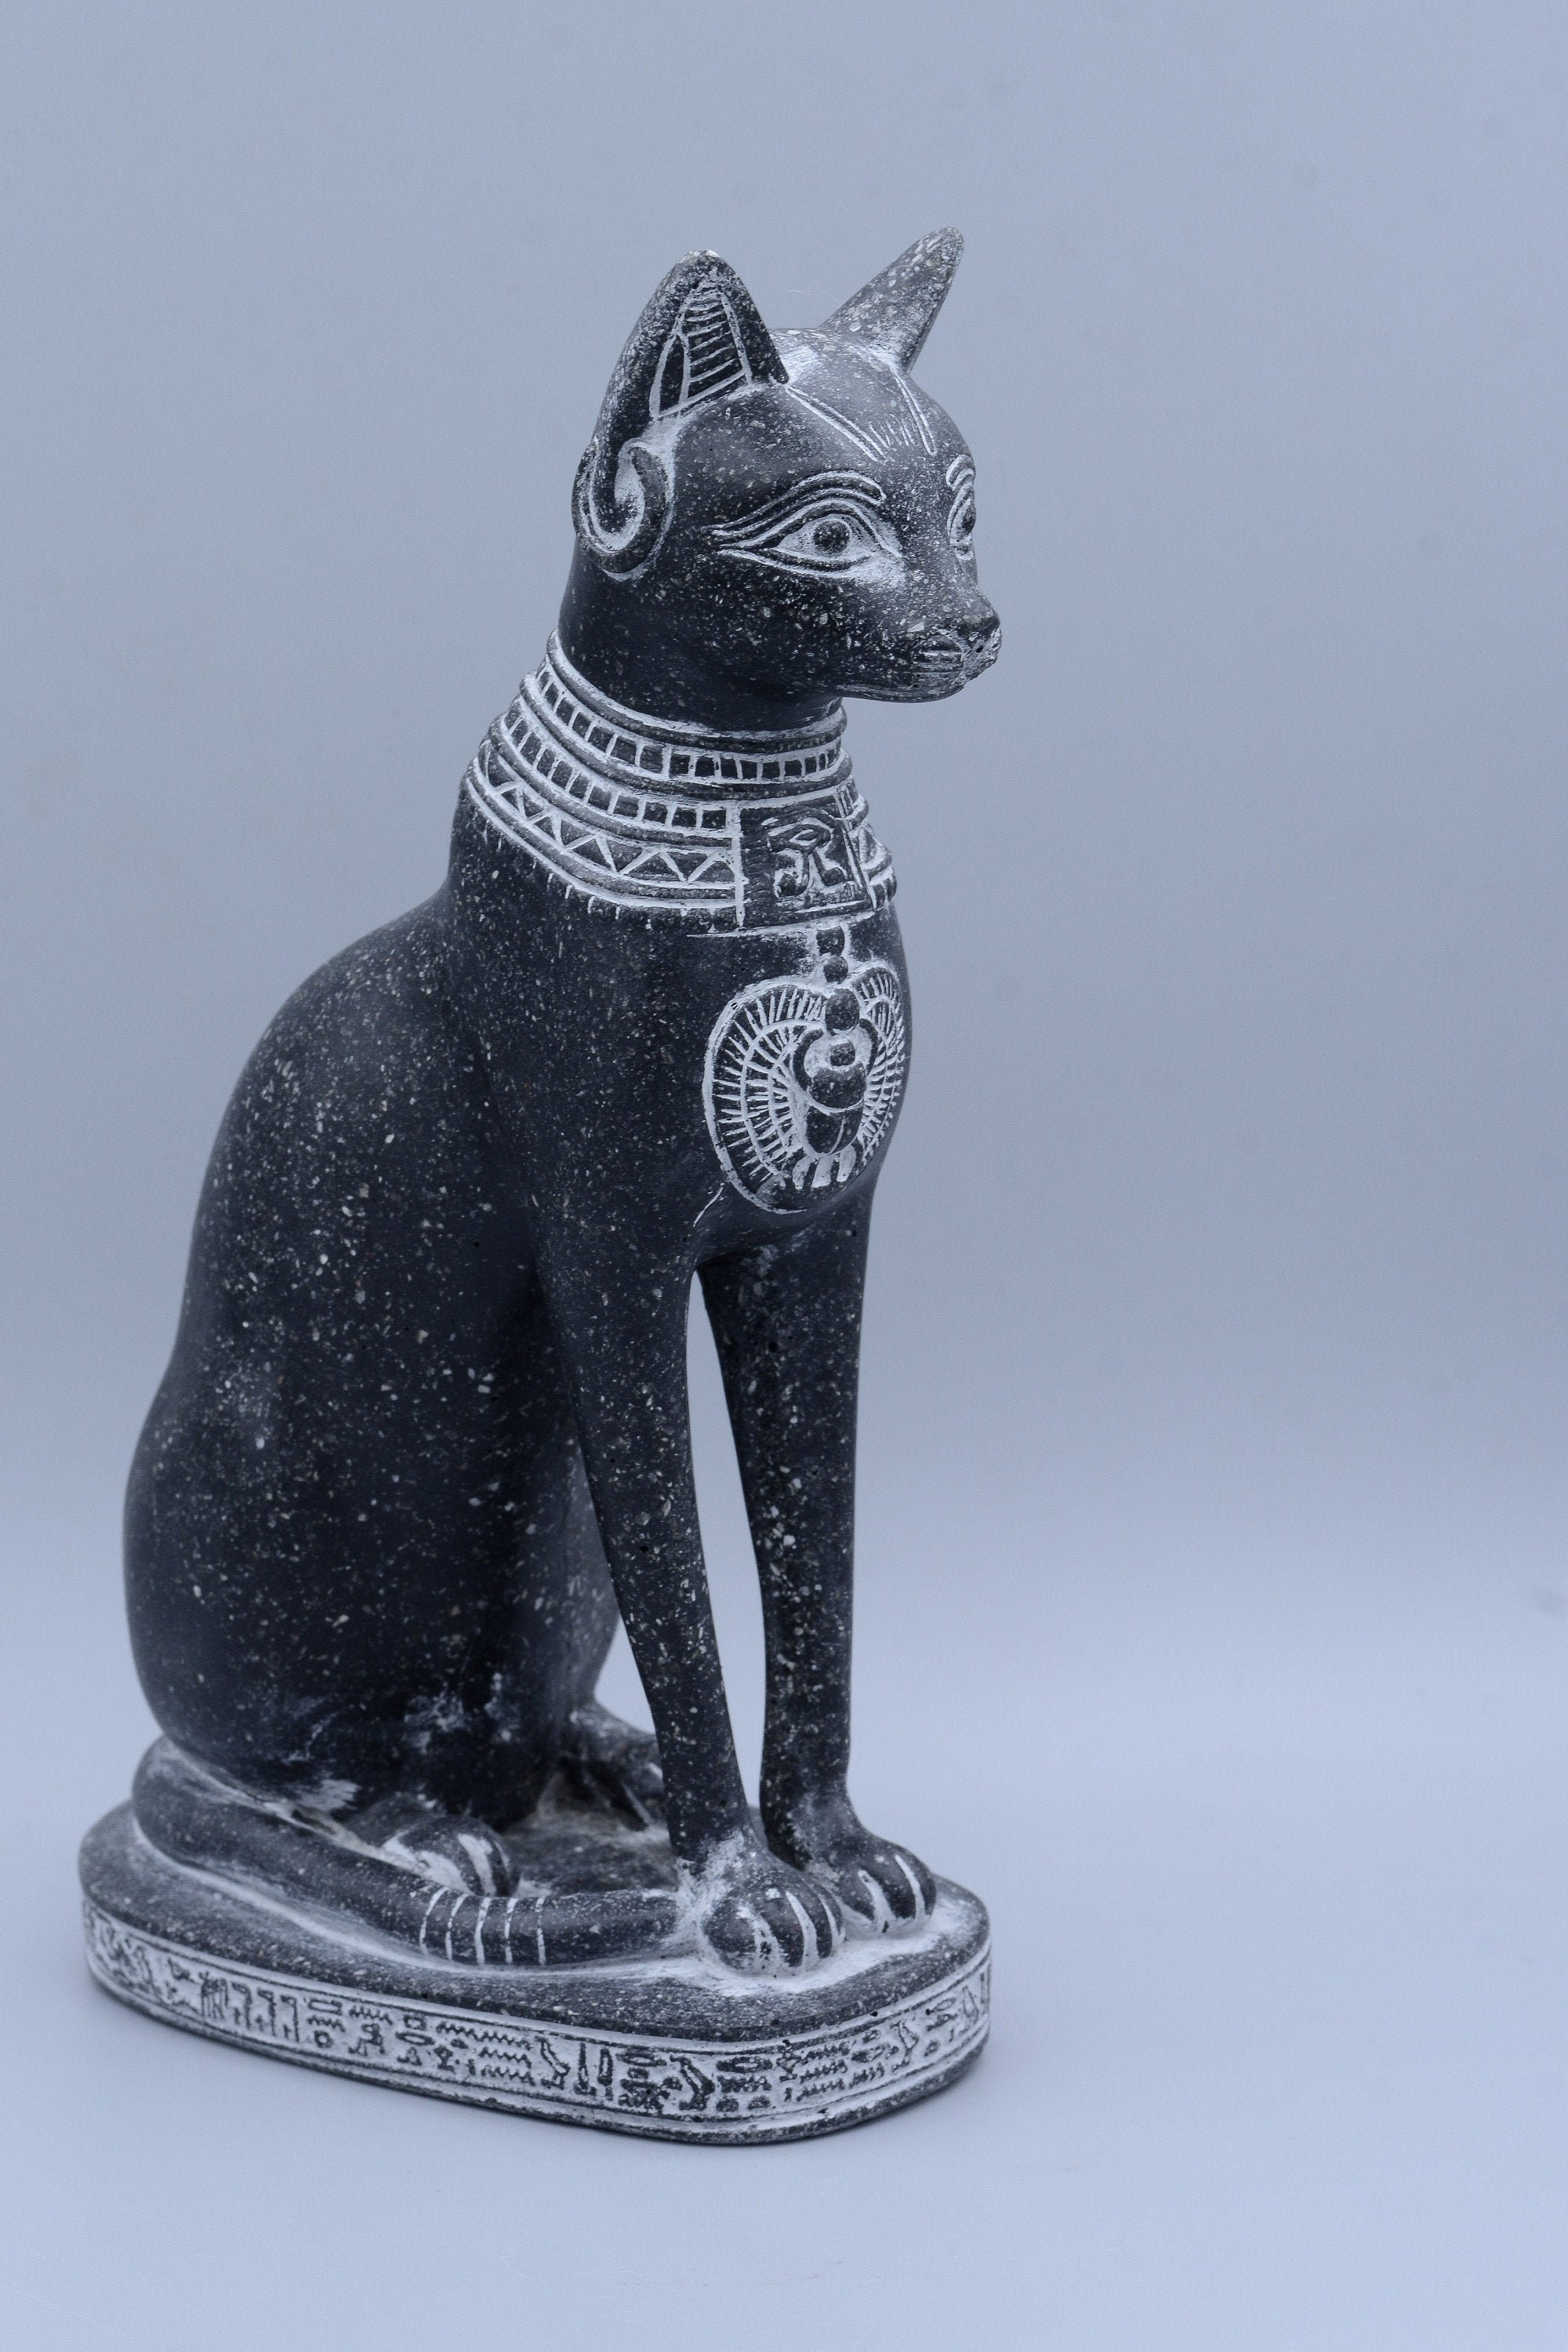 Statue Chat L'Égyptien